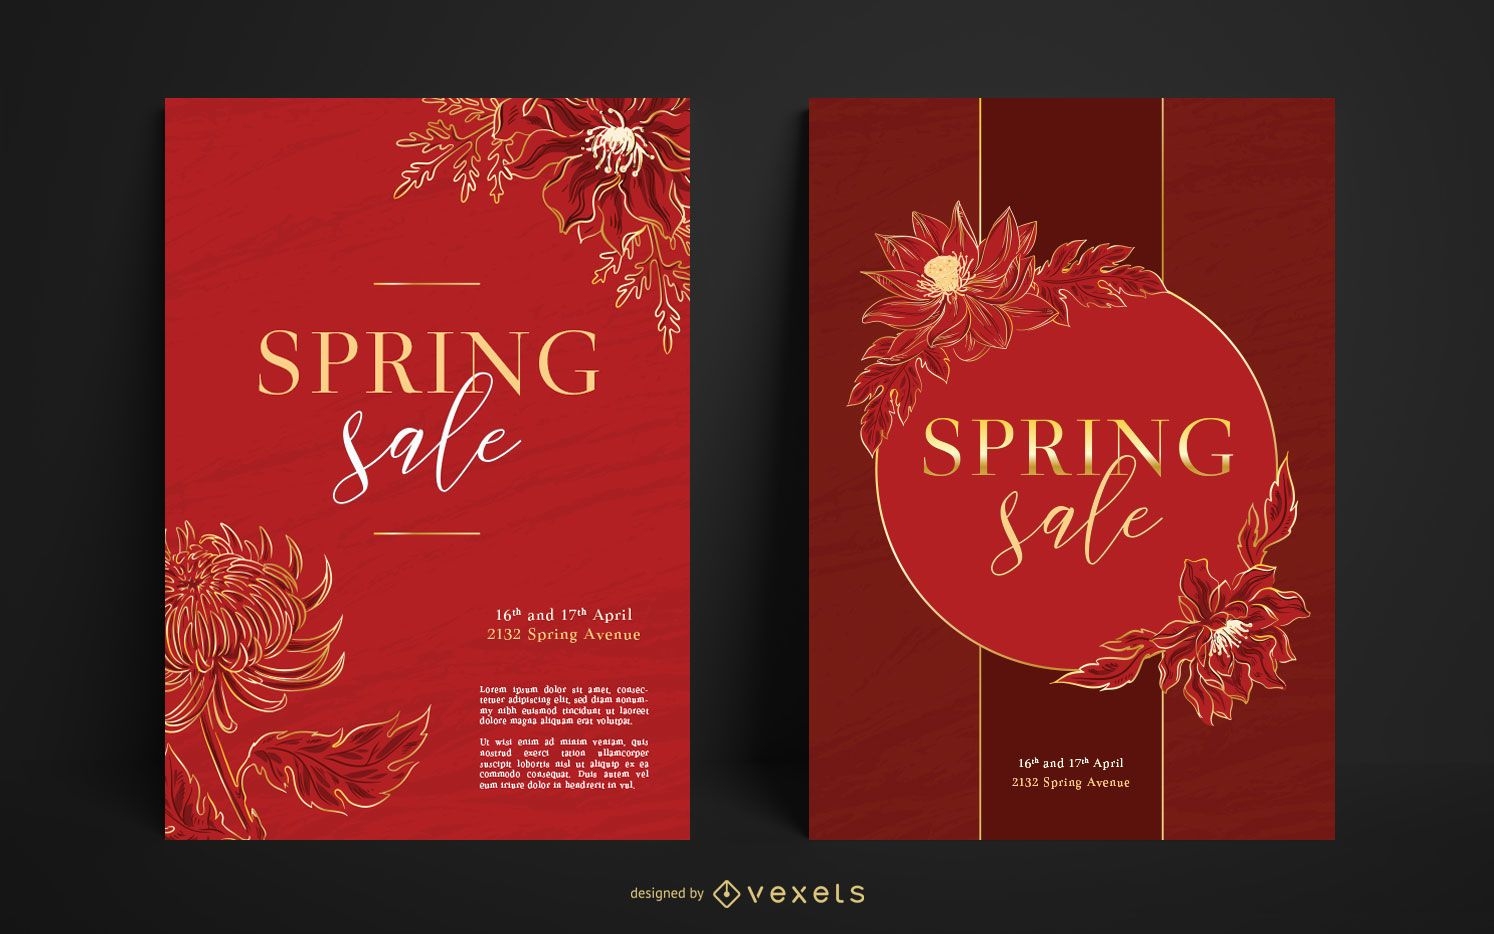 Spring sale poster set